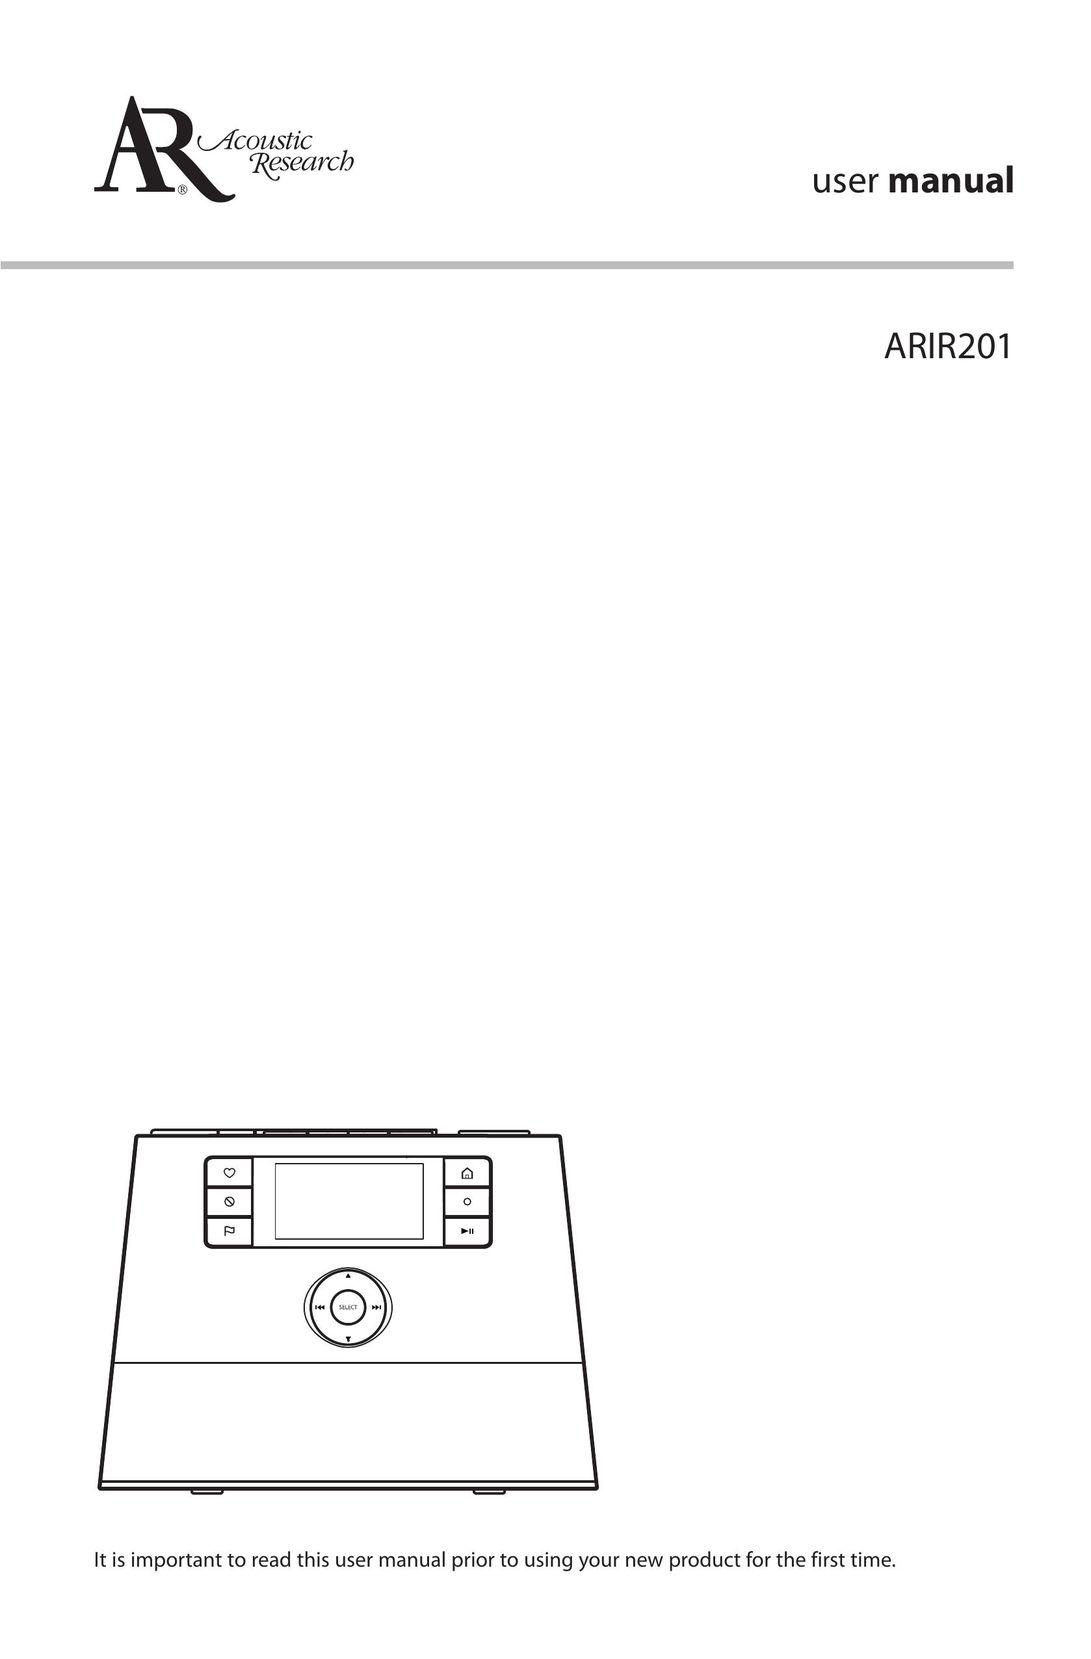 Acoustic Research ARIR201 Radio User Manual